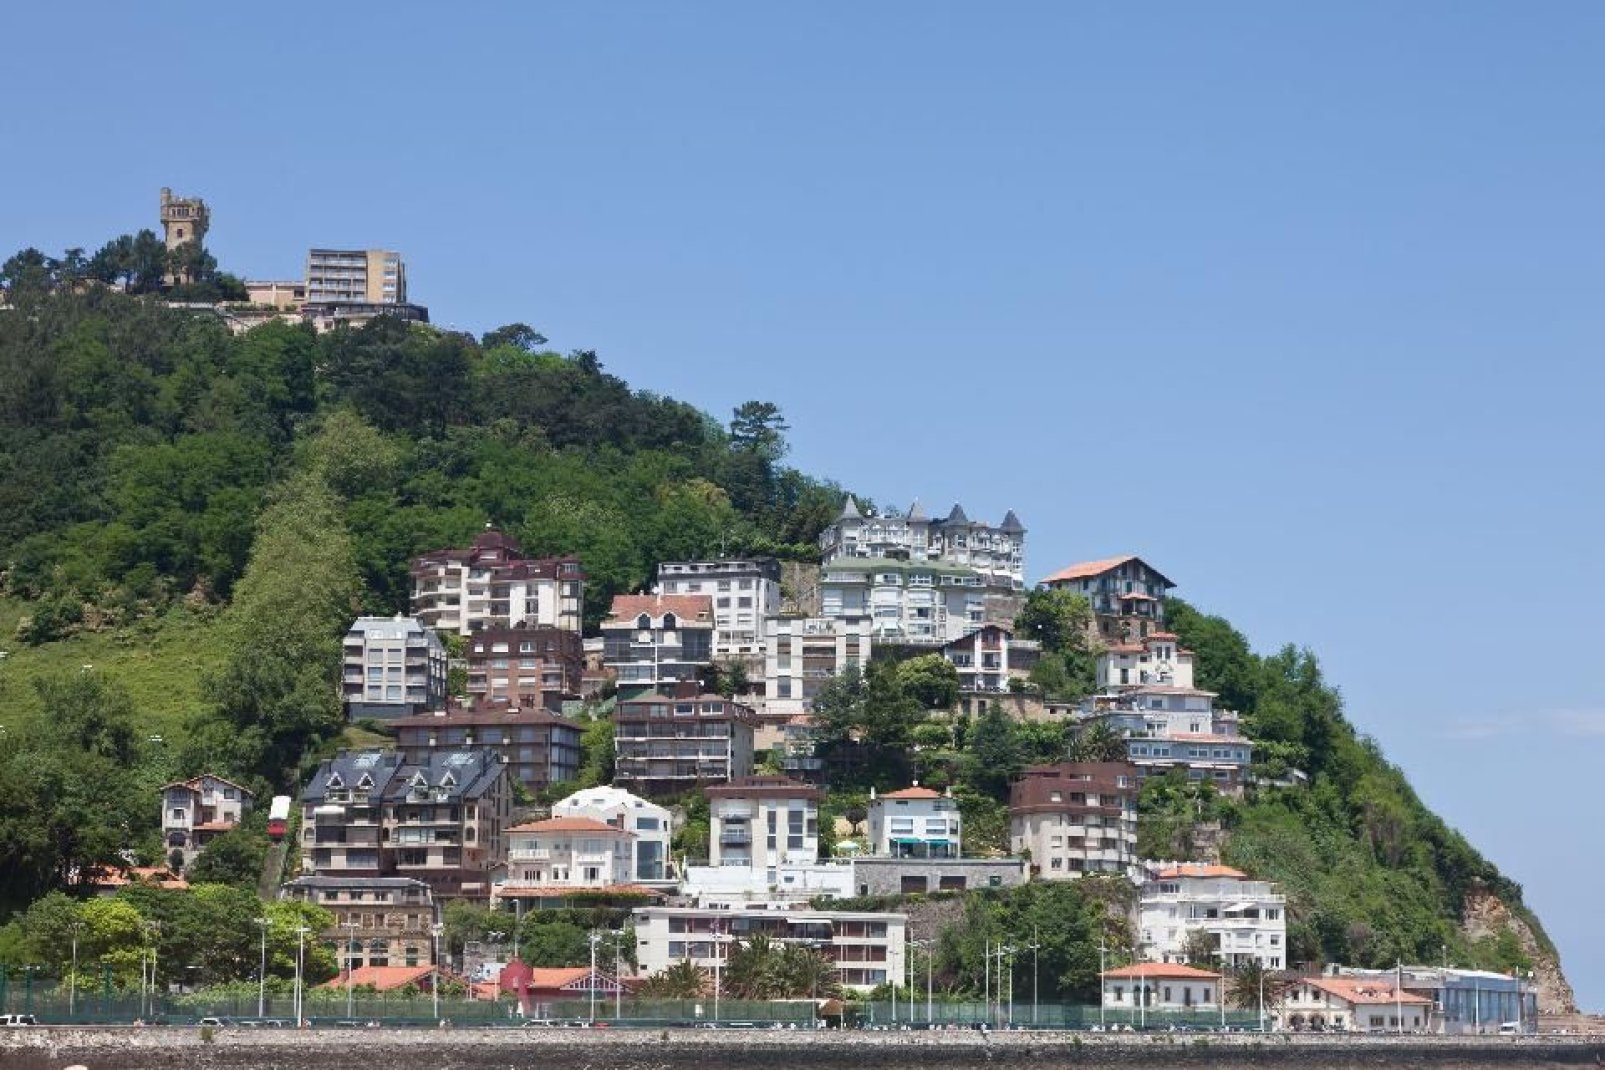 Le colline sono disseminate di case.